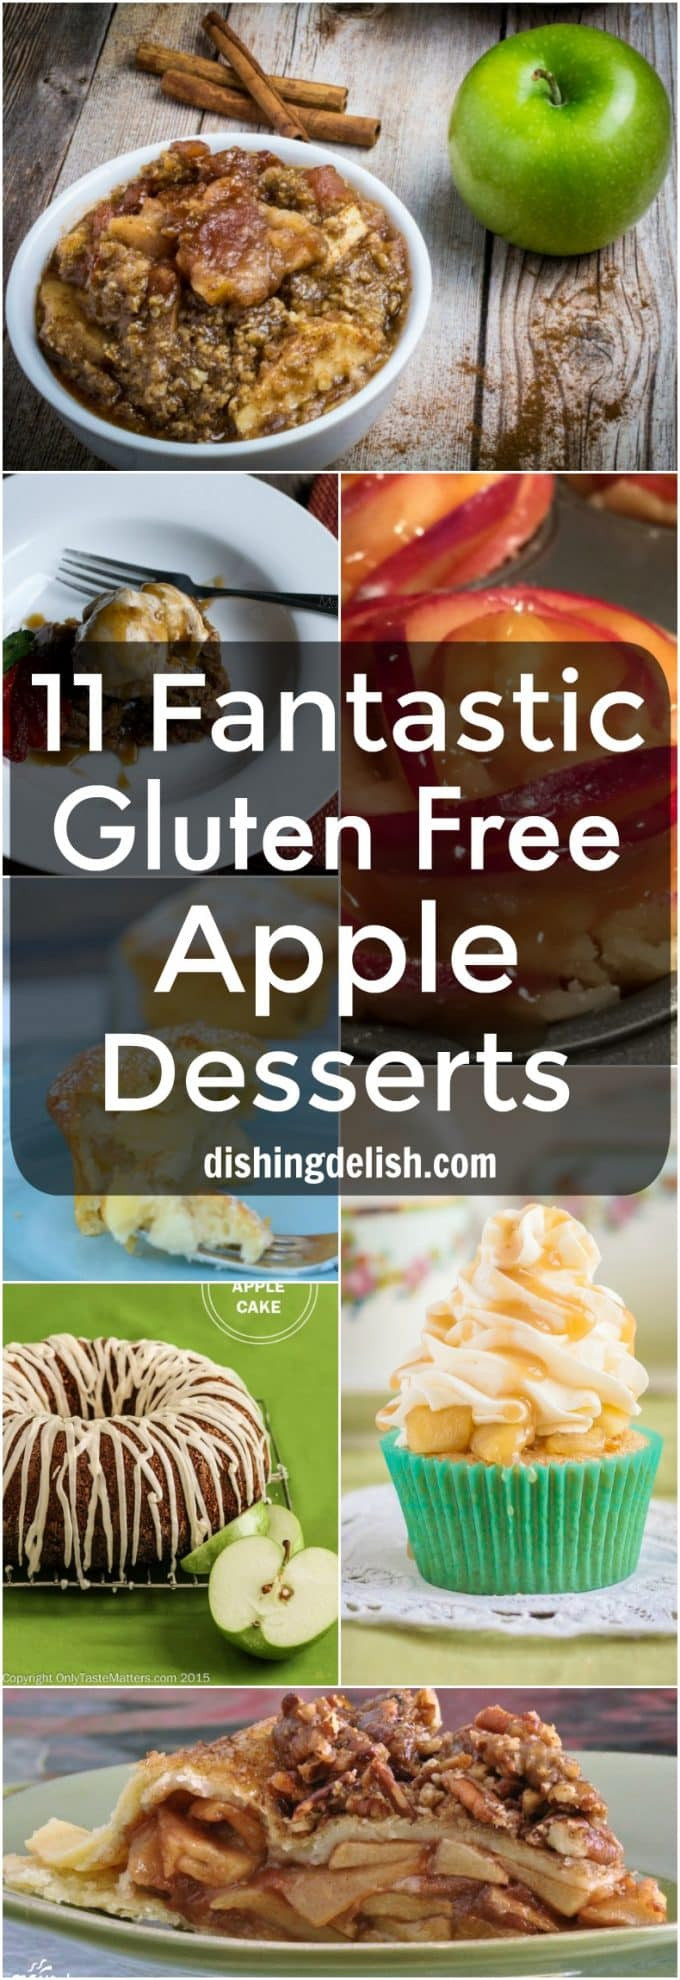 Gluten Free Apple Desserts
 11 Fantastic Gluten Free Apple Desserts